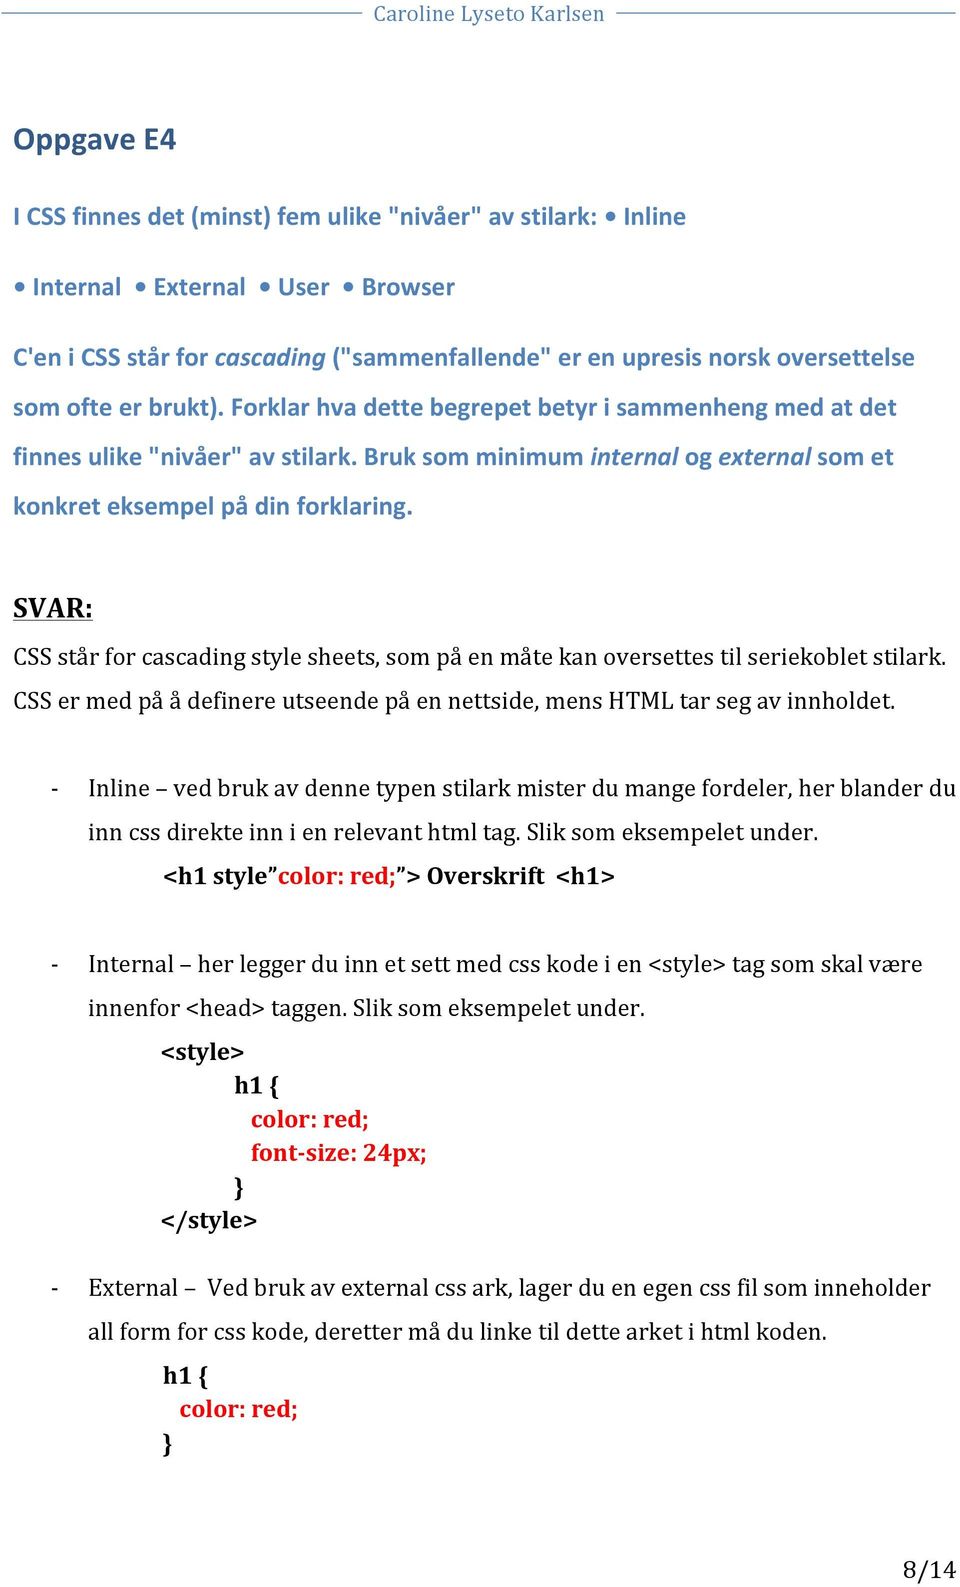 CSS står for cascading style sheets, som på en måte kan oversettes til seriekoblet stilark. CSS er med på å definere utseende på en nettside, mens HTML tar seg av innholdet.